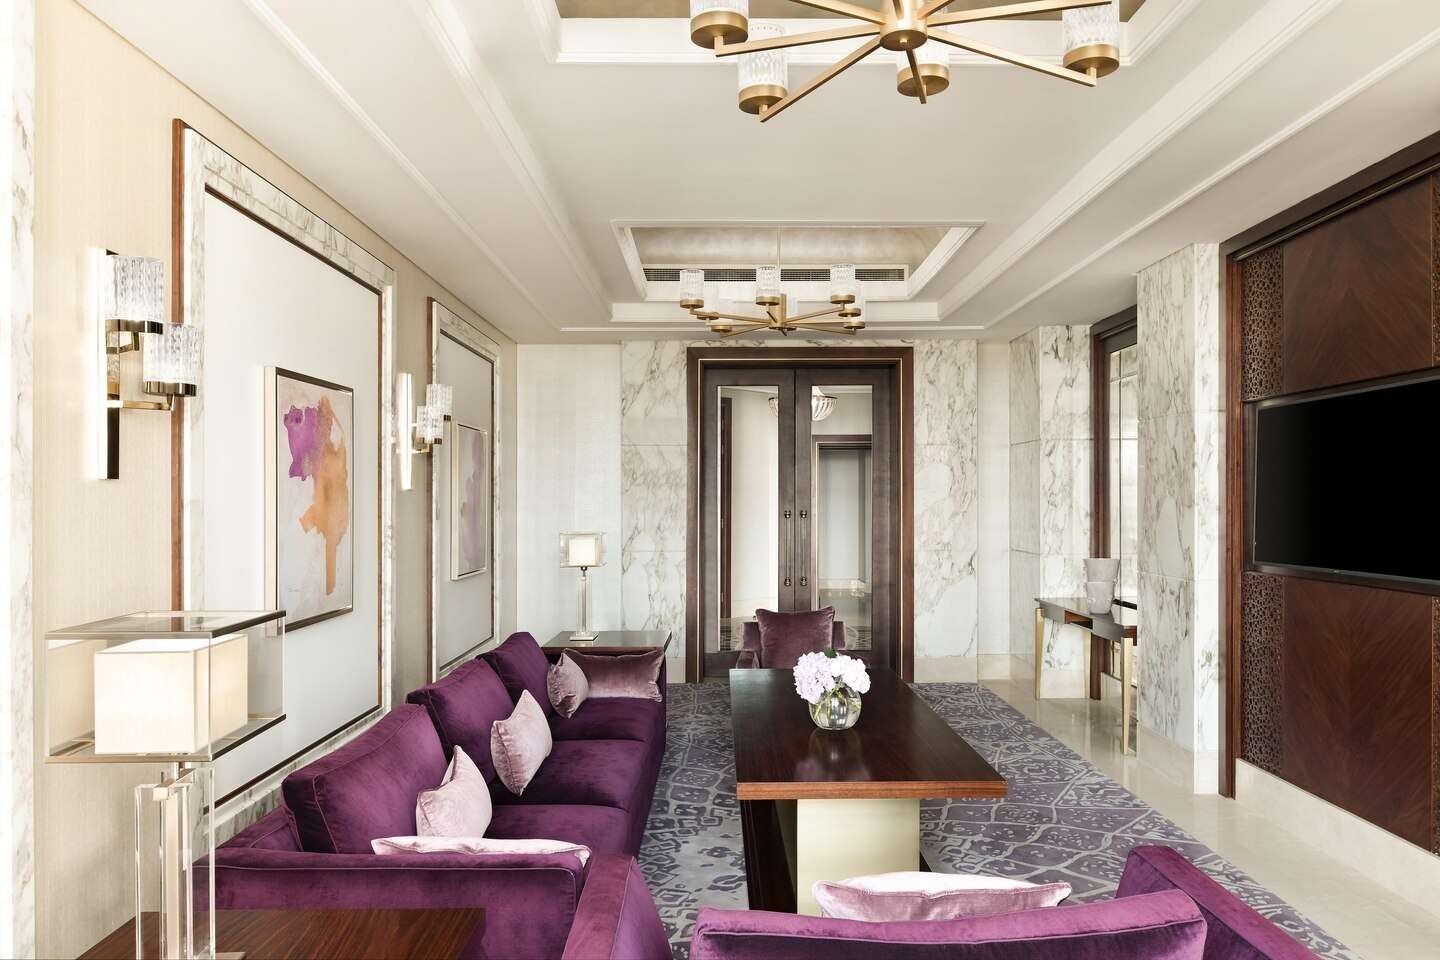 Al Messila Royal Suites, Al Messila, A Luxury Collection Resort & Spa Doha 5*